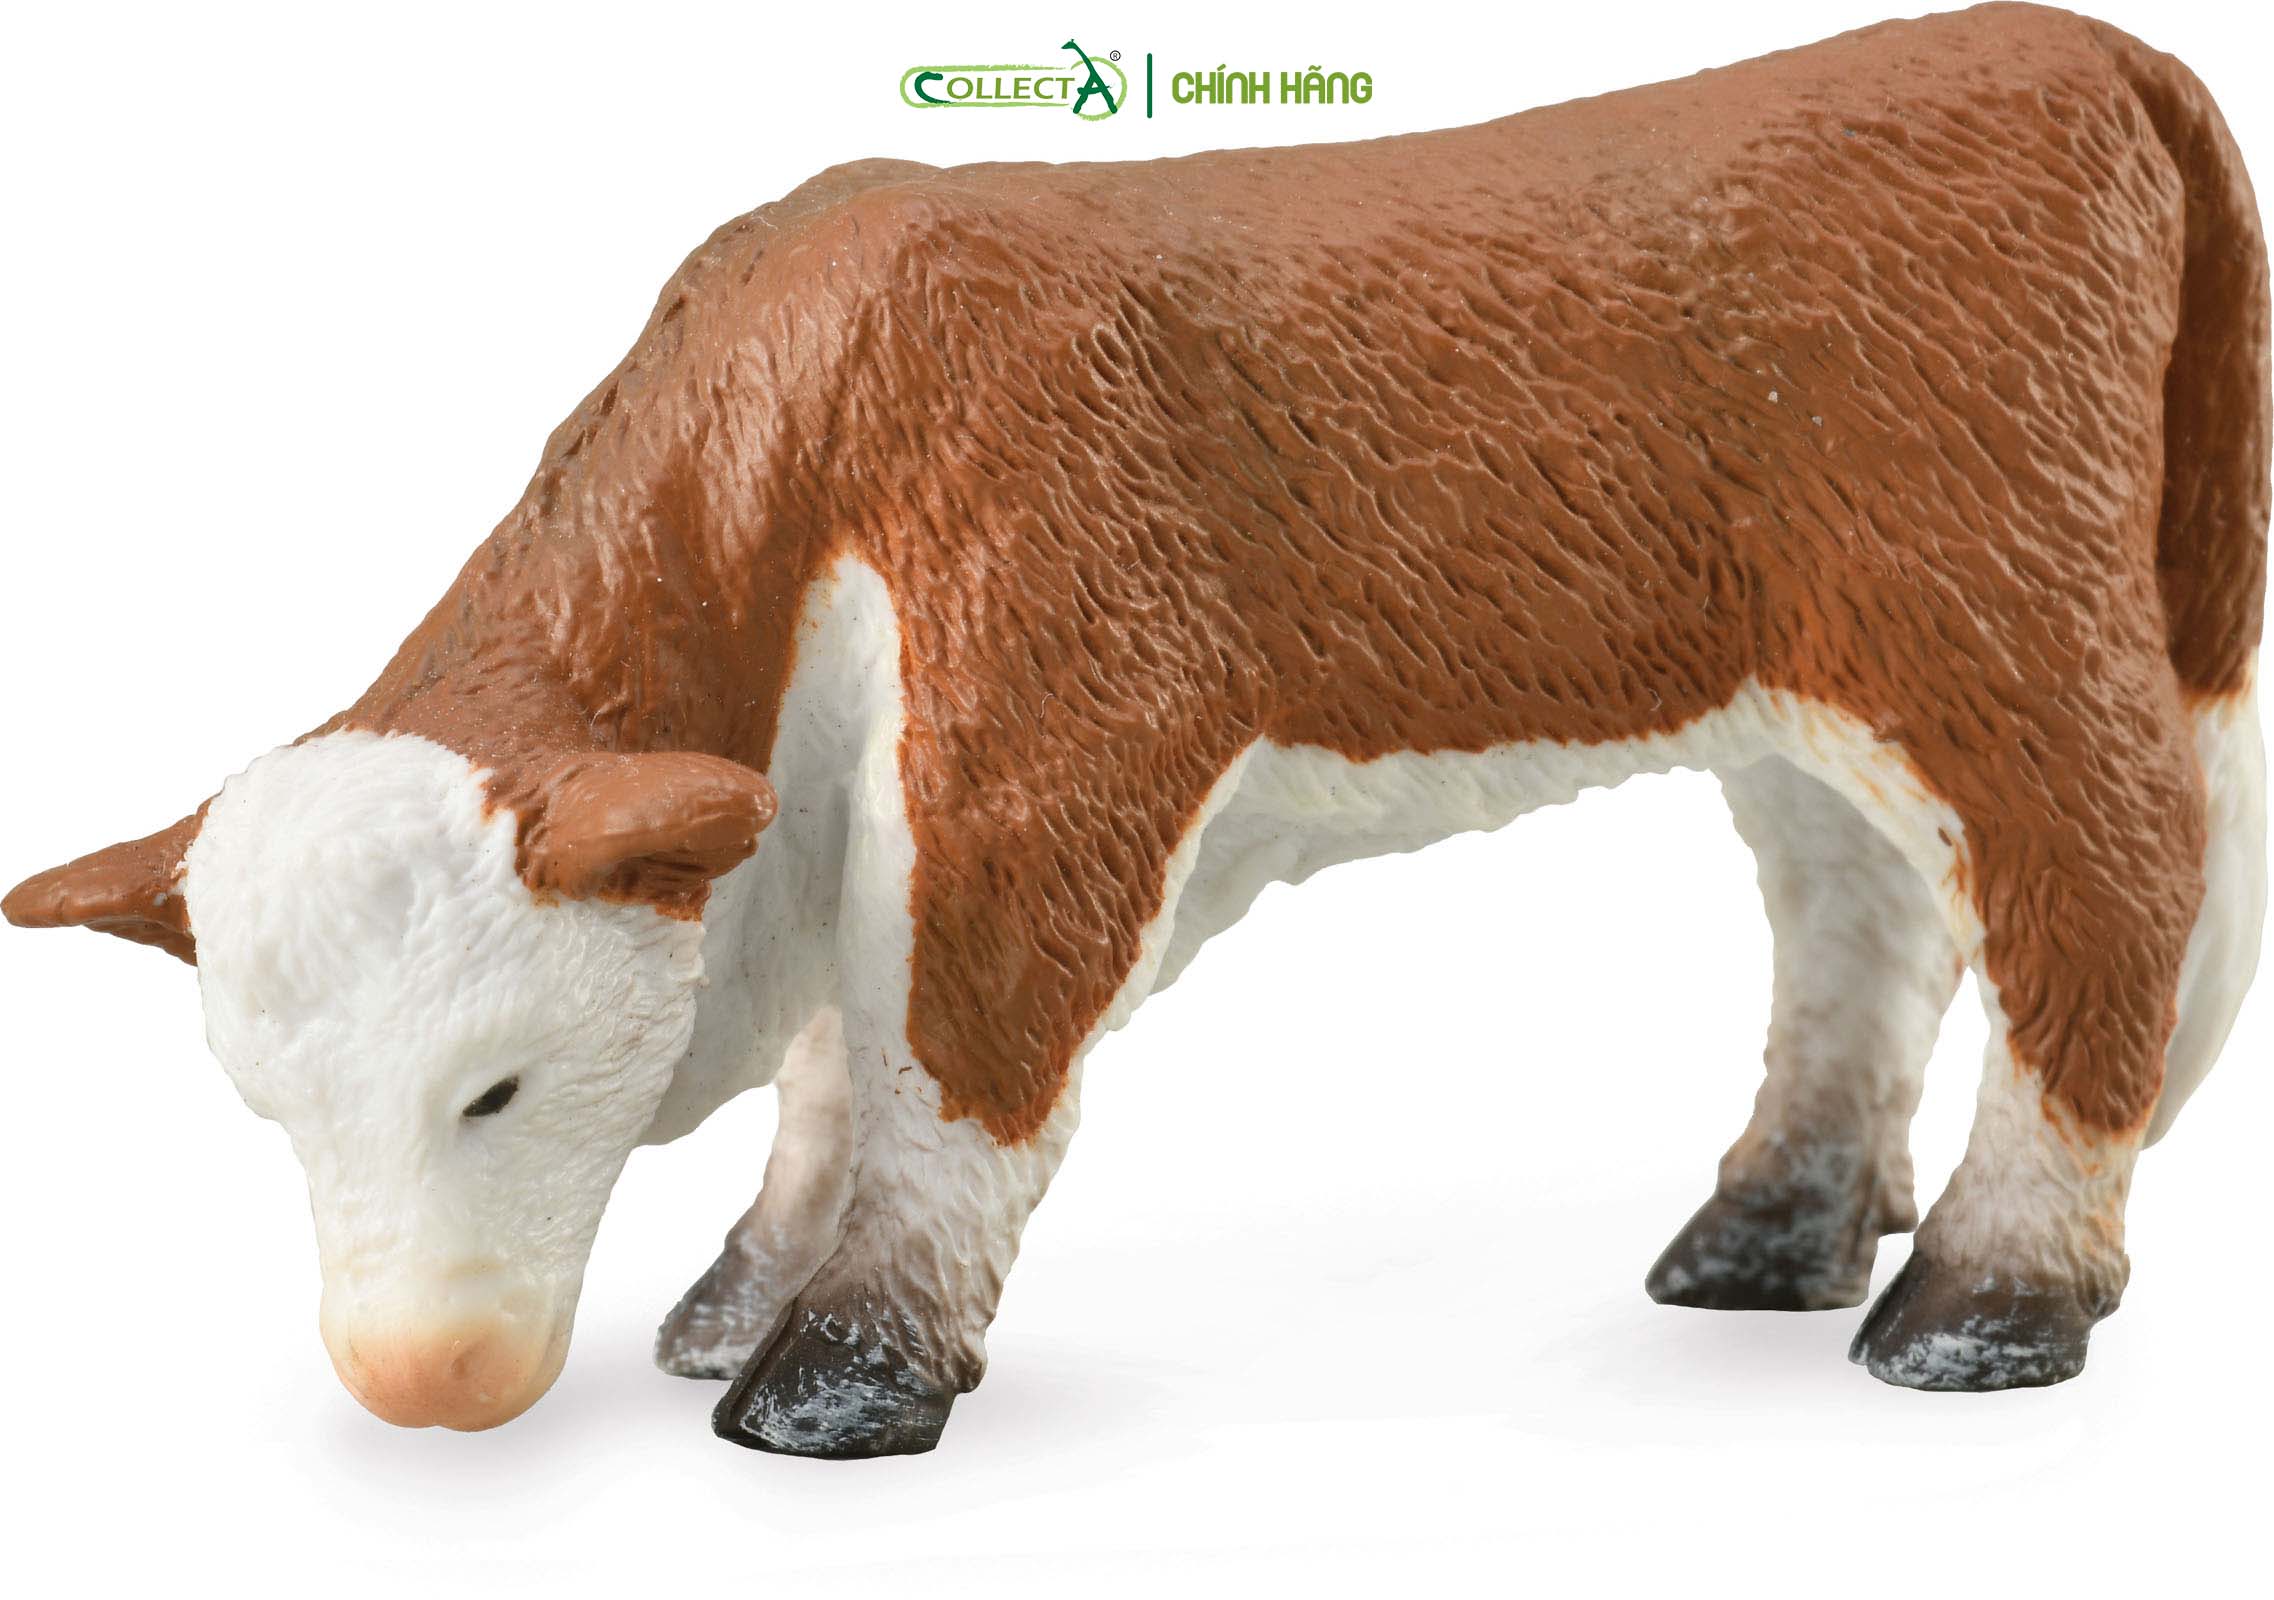 Mô hình thu nhỏ: Bò con Hereford - Gặm cỏ - Hereford Calf - Grazing, hiệu: CollectA, mã HS 9650191[88242] -  Chất liệu an toàn cho trẻ - Hàng chính hãng